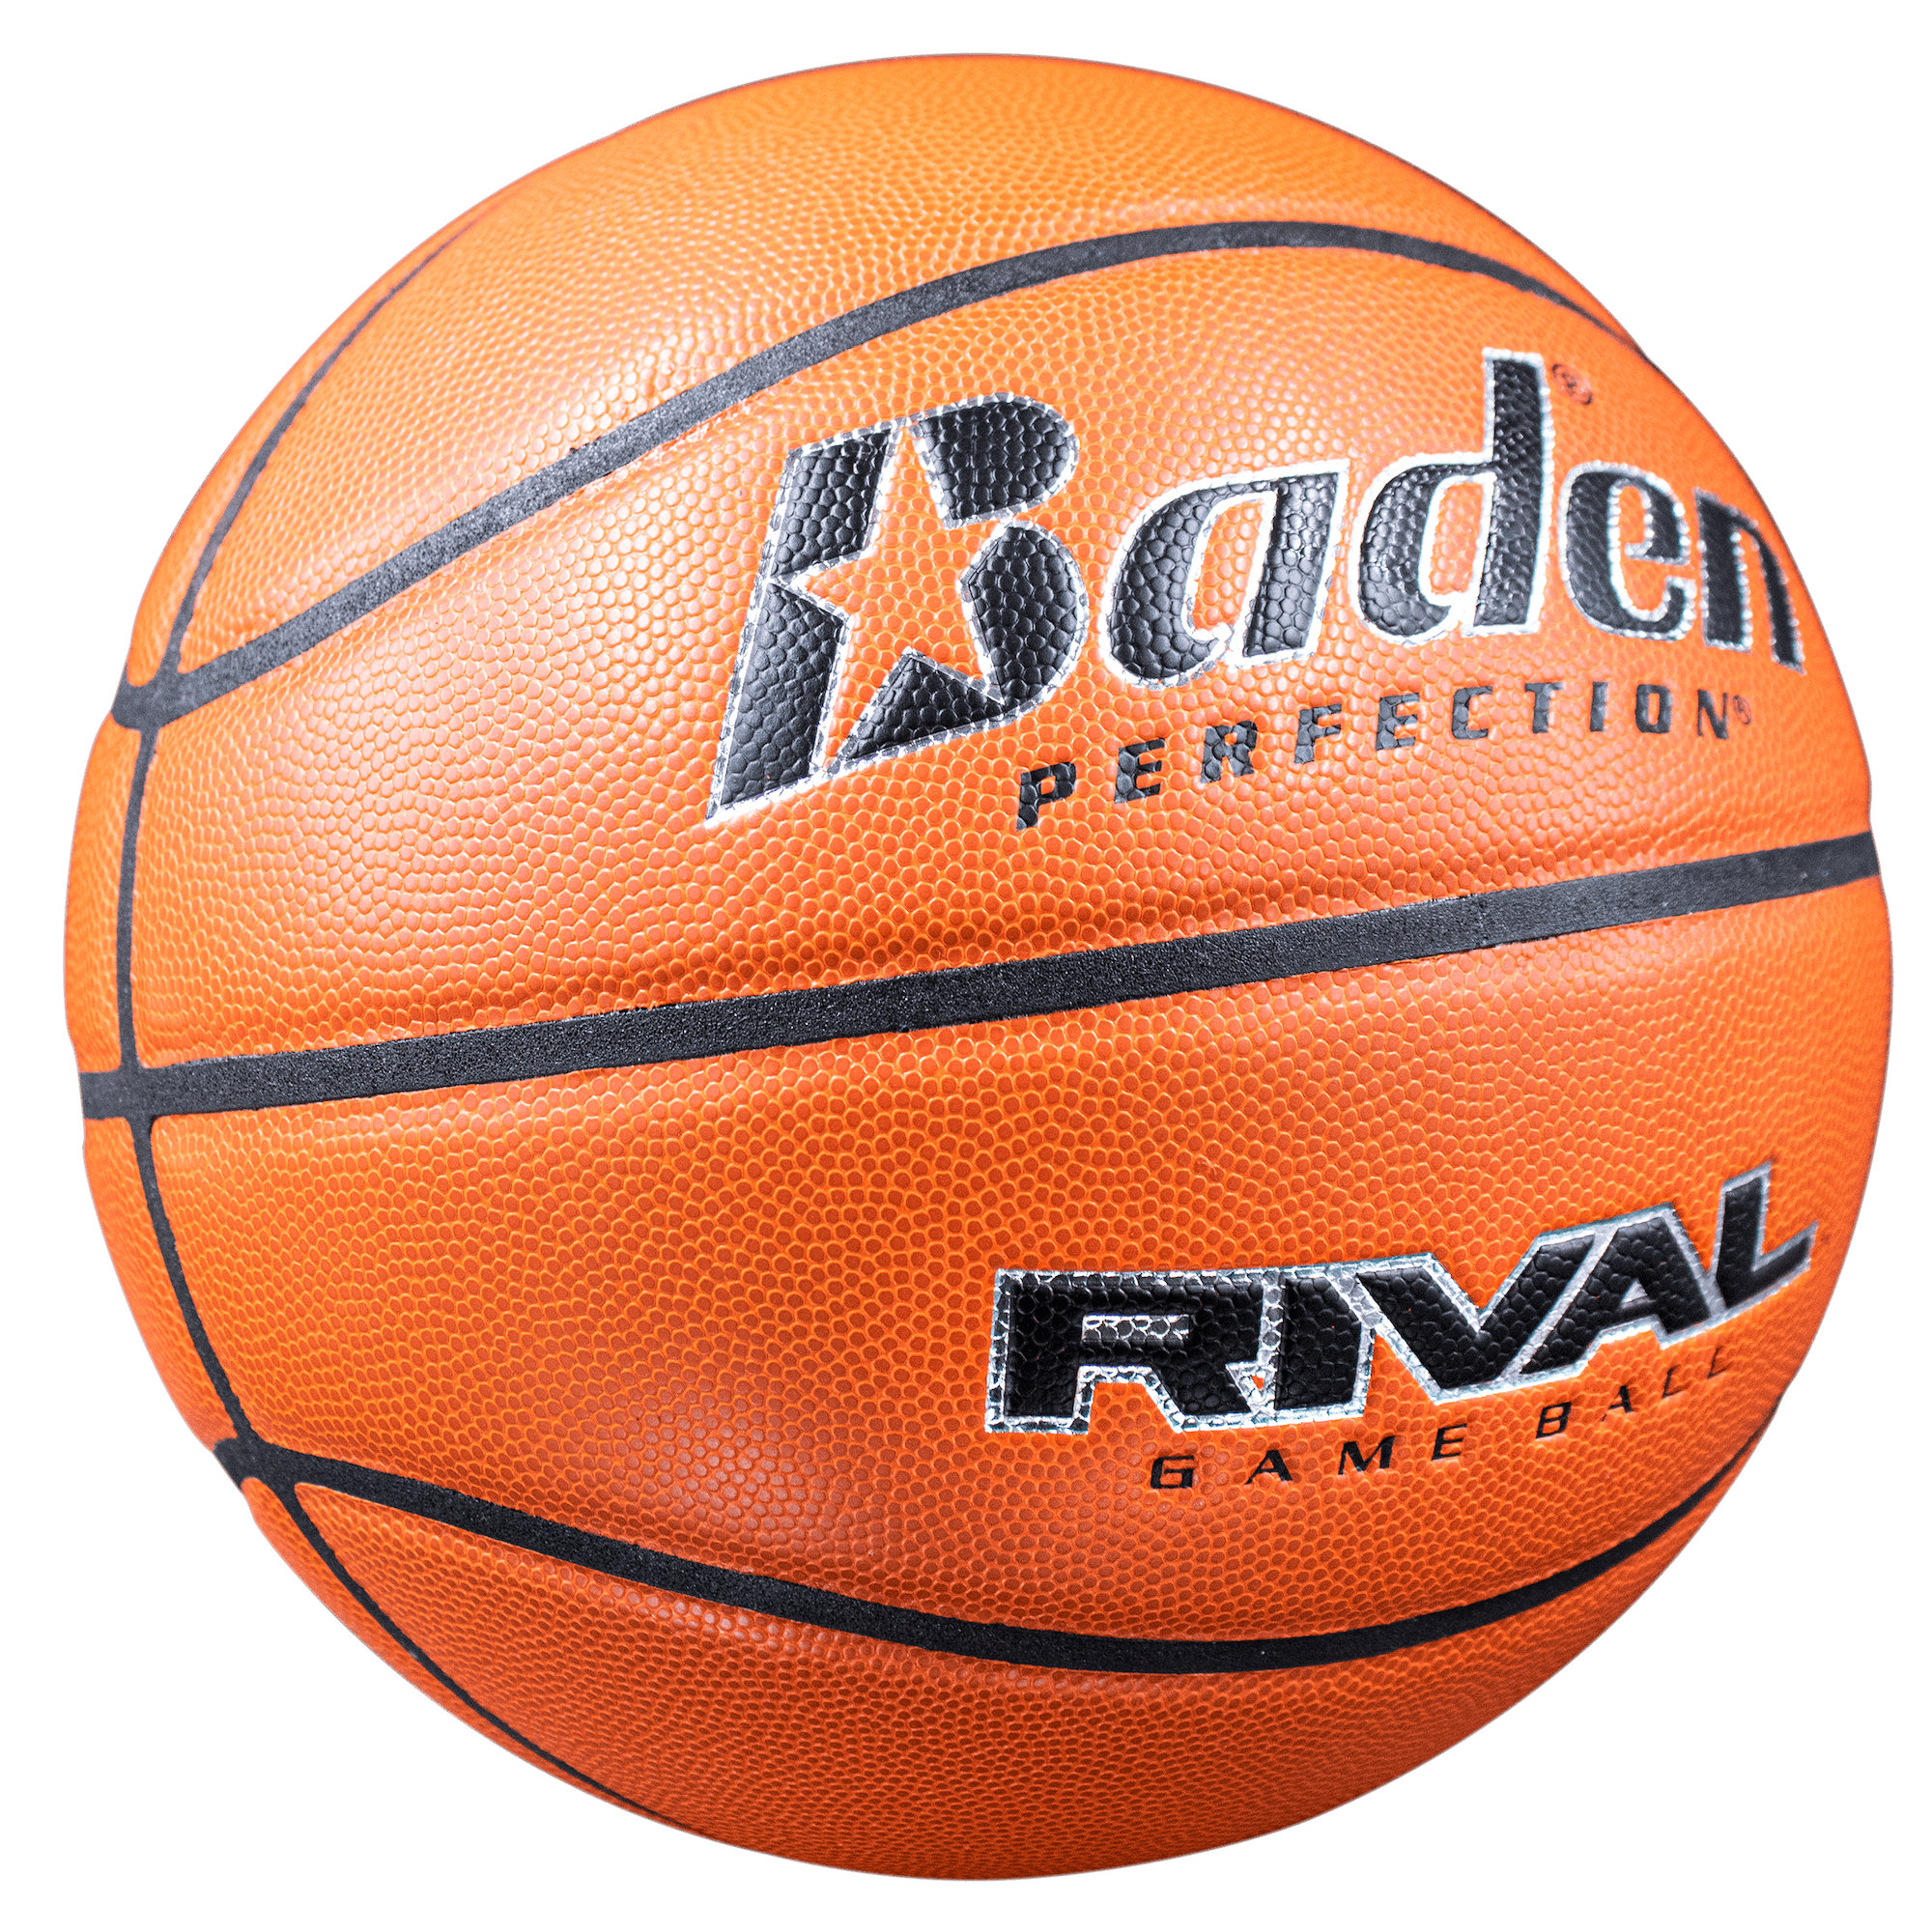 Baden Perfection Rival Game Basketballs